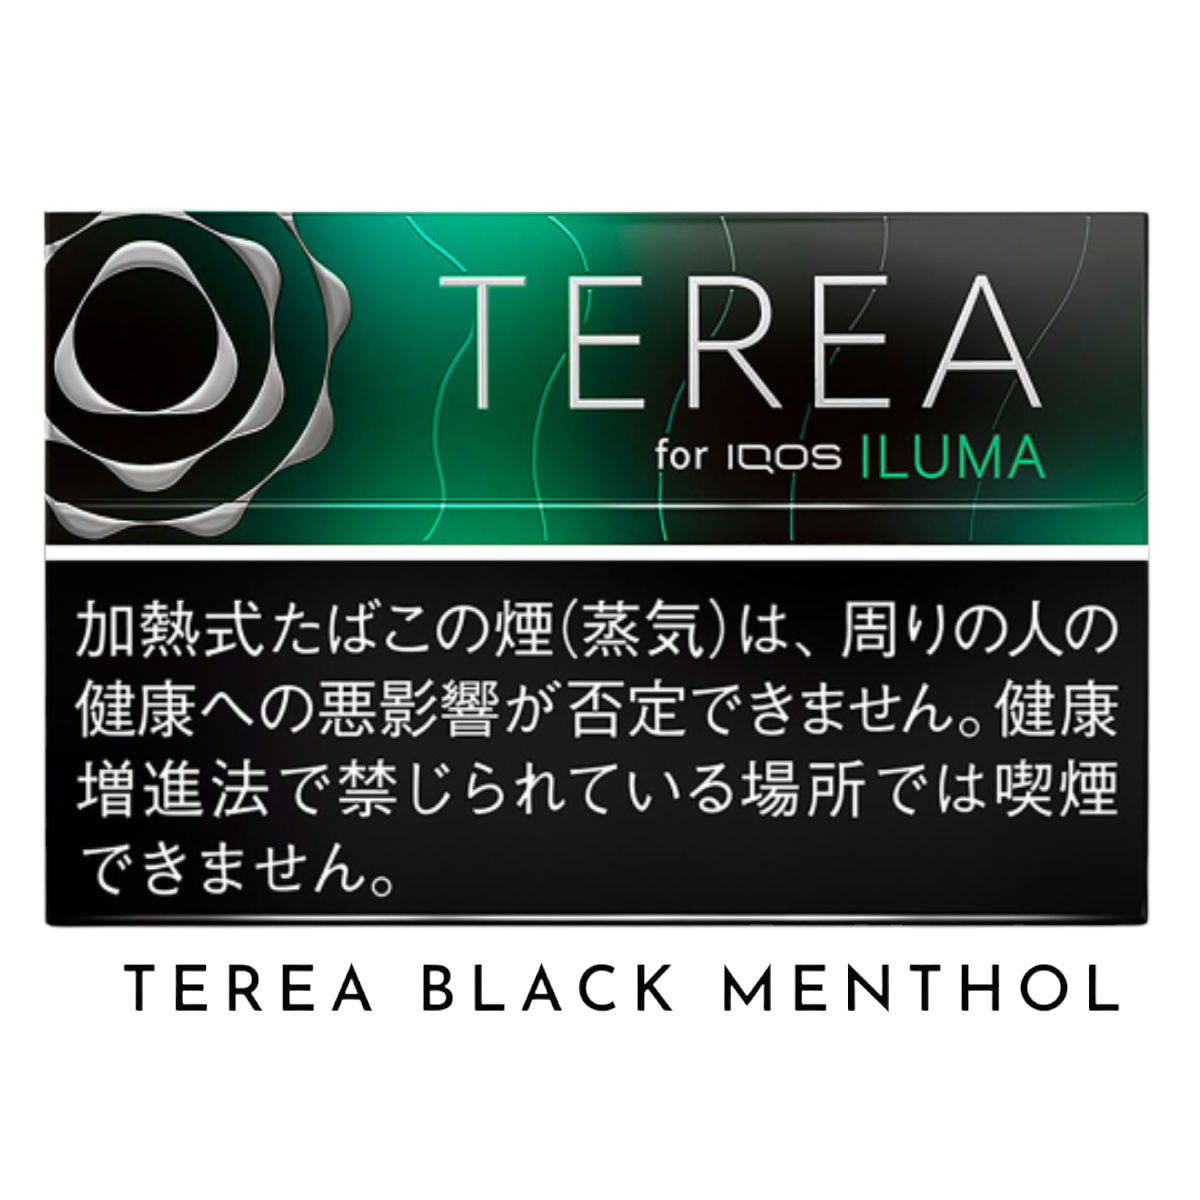 Black Menthol Heets Terea For Iqos Iluma - Vape Dubai, Buy Vape Online in  Abu Dhabi